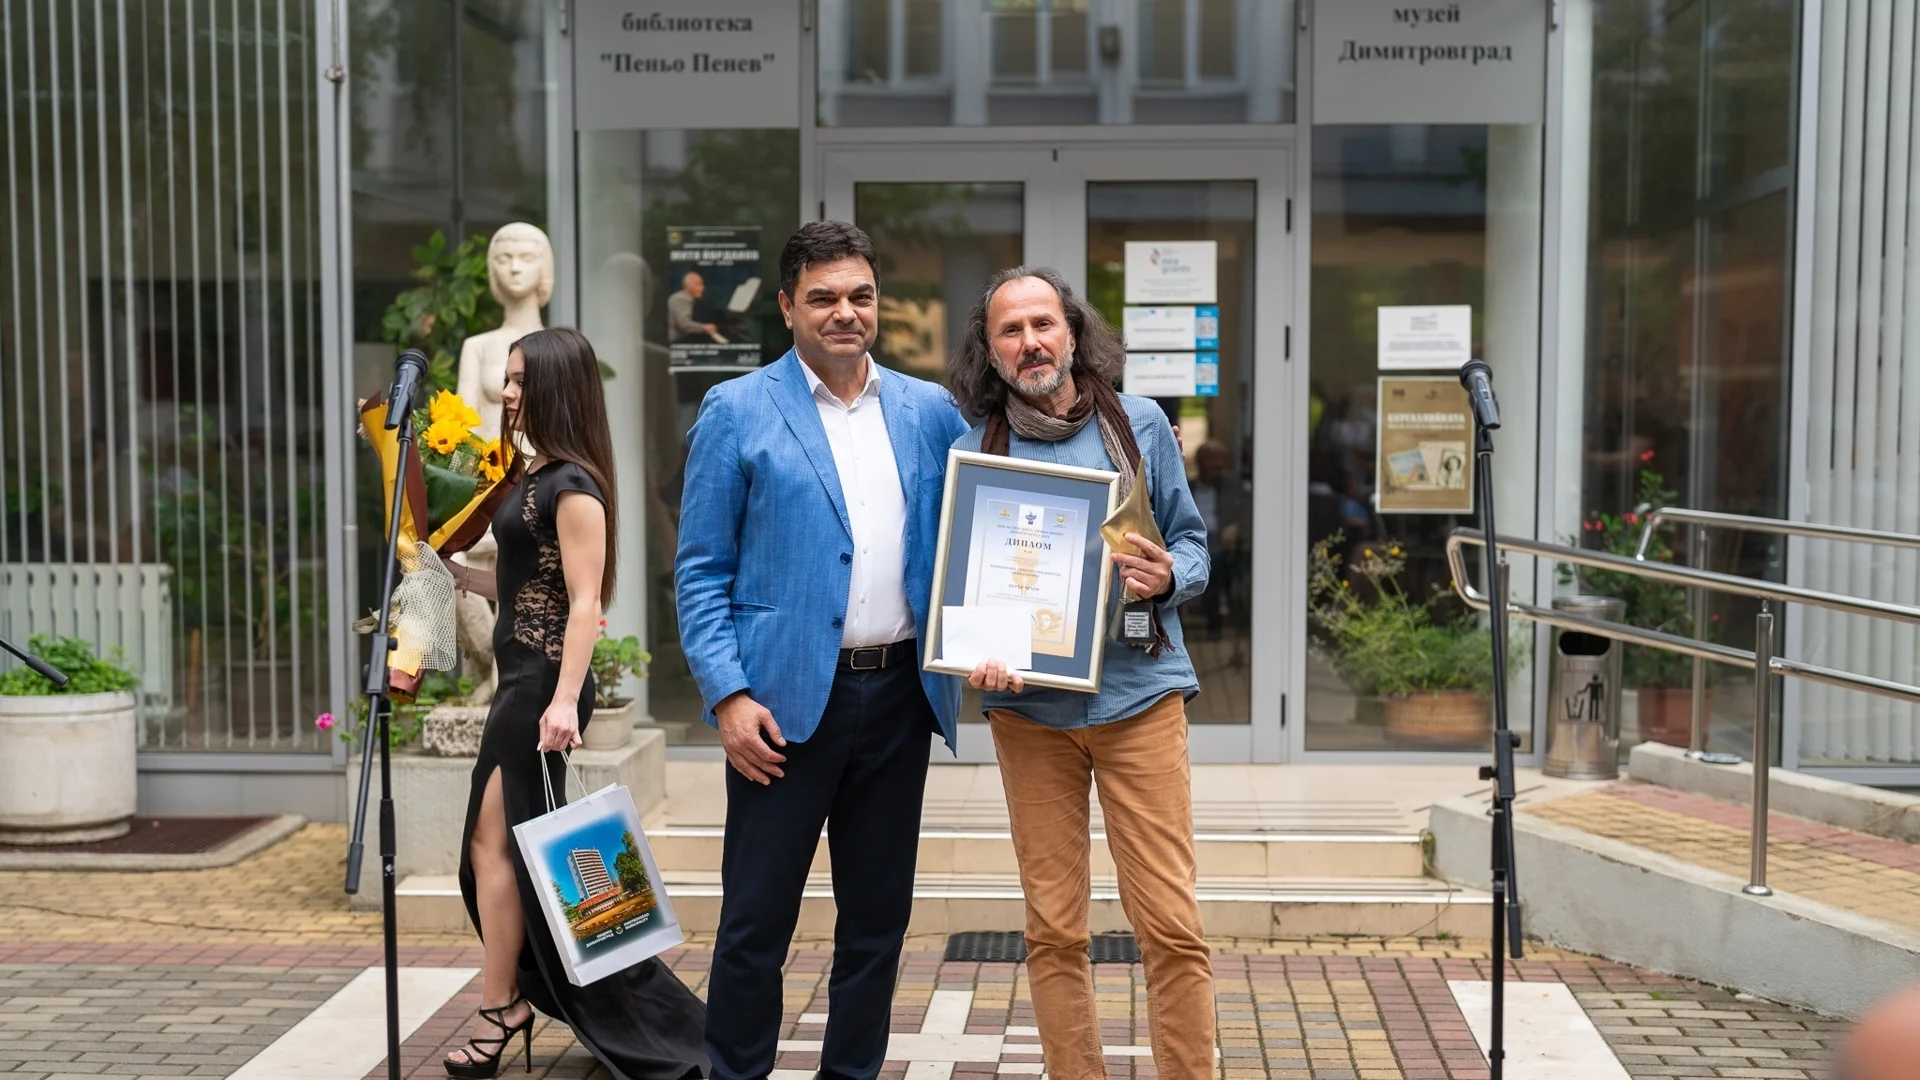 Връчиха наградата за поезия "Пеньо Пенев" на Петър Чухов в Димитровград